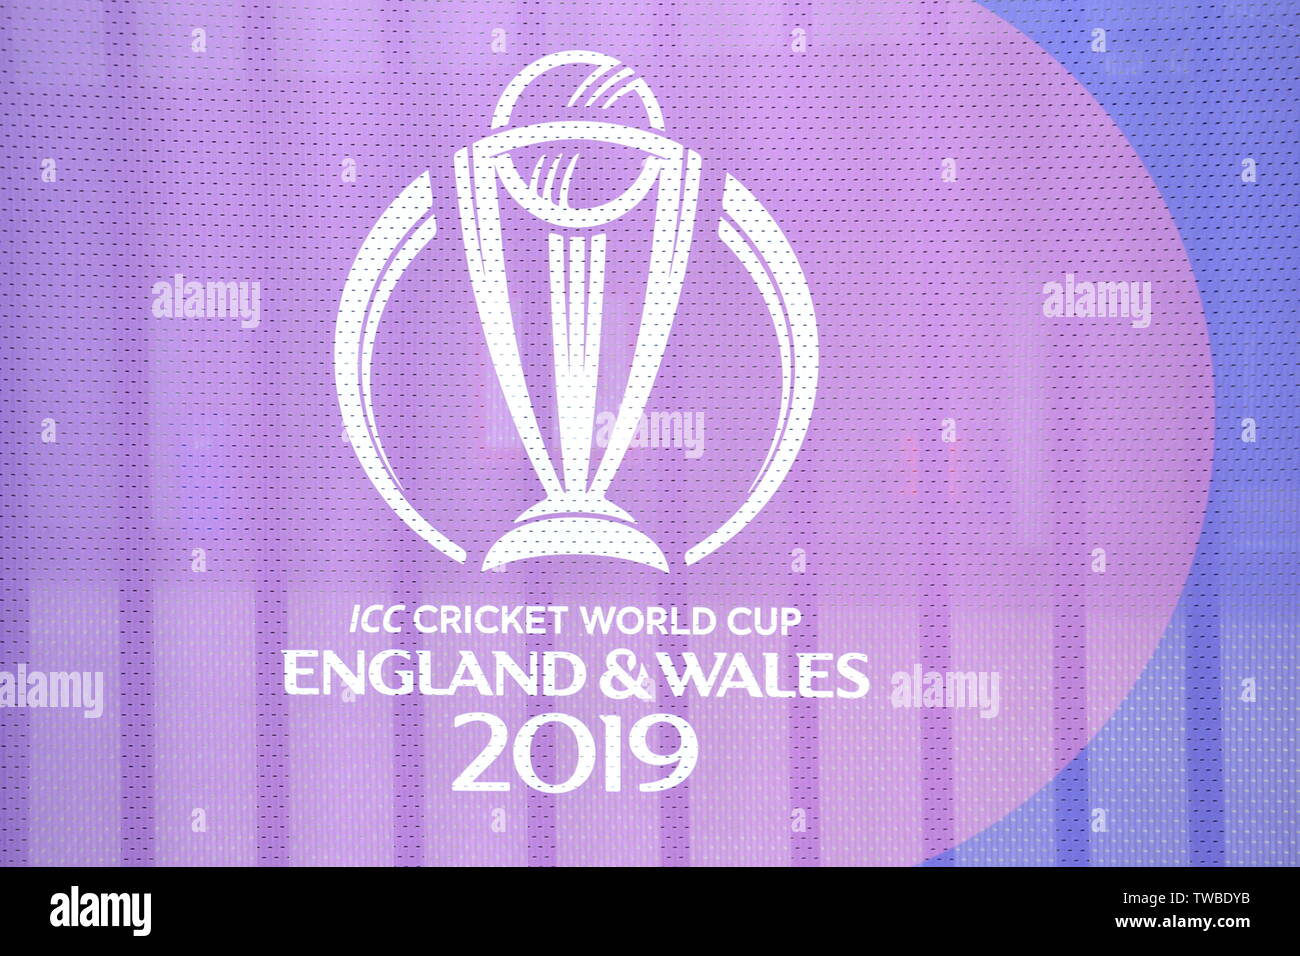 La signalisation pour l'ICC Cricket World Cup 2019 au Club de Cricket du Lancashire, Old Trafford, Manchester. 2019 L'International Cricket Council (ICC) Coupe du Monde de Cricket est organisé par l'Angleterre et du Pays de Galles du 30 mai au 14 juillet 2019. Six matchs ont lieu à Old Trafford, Manchester, plus qu'à tout autre endroit. Banque D'Images